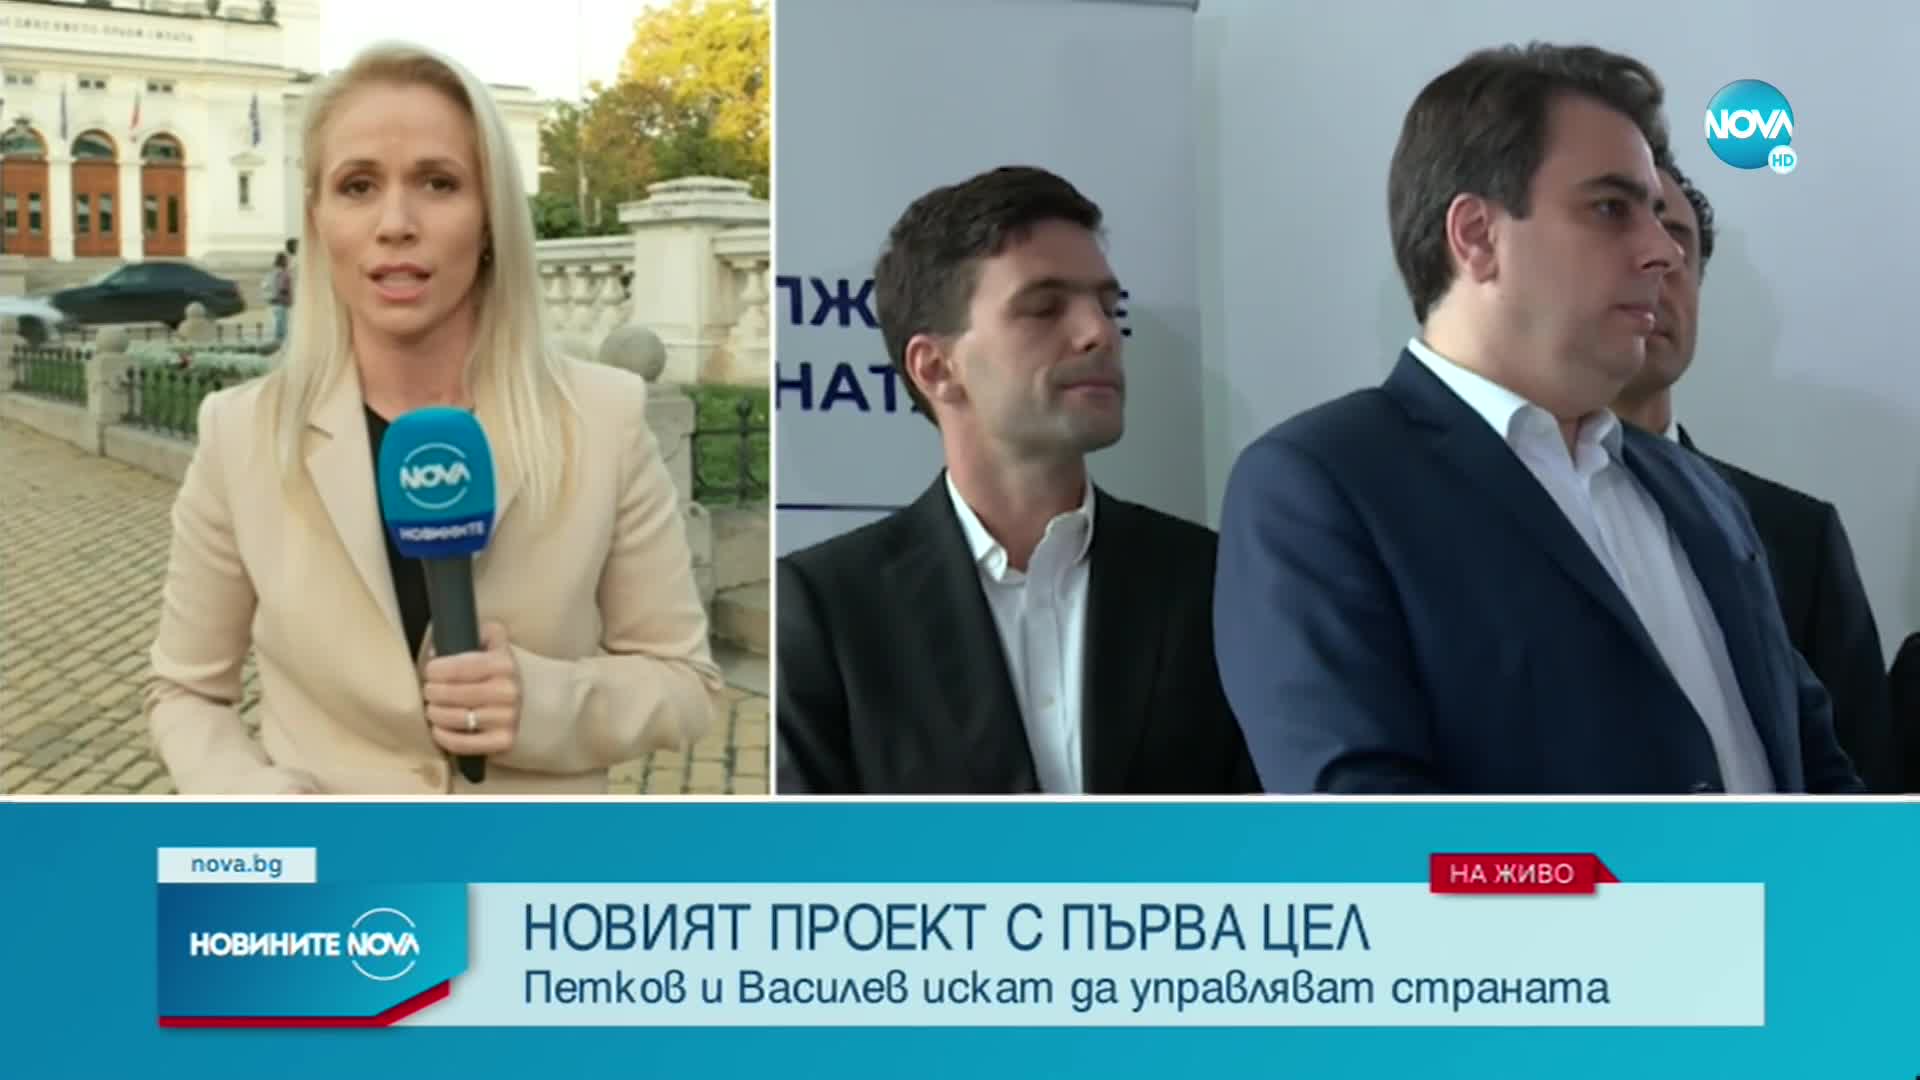 Асен Василев: Говорим с няколко партии, най-вероятно ще ги сложим в коалиция